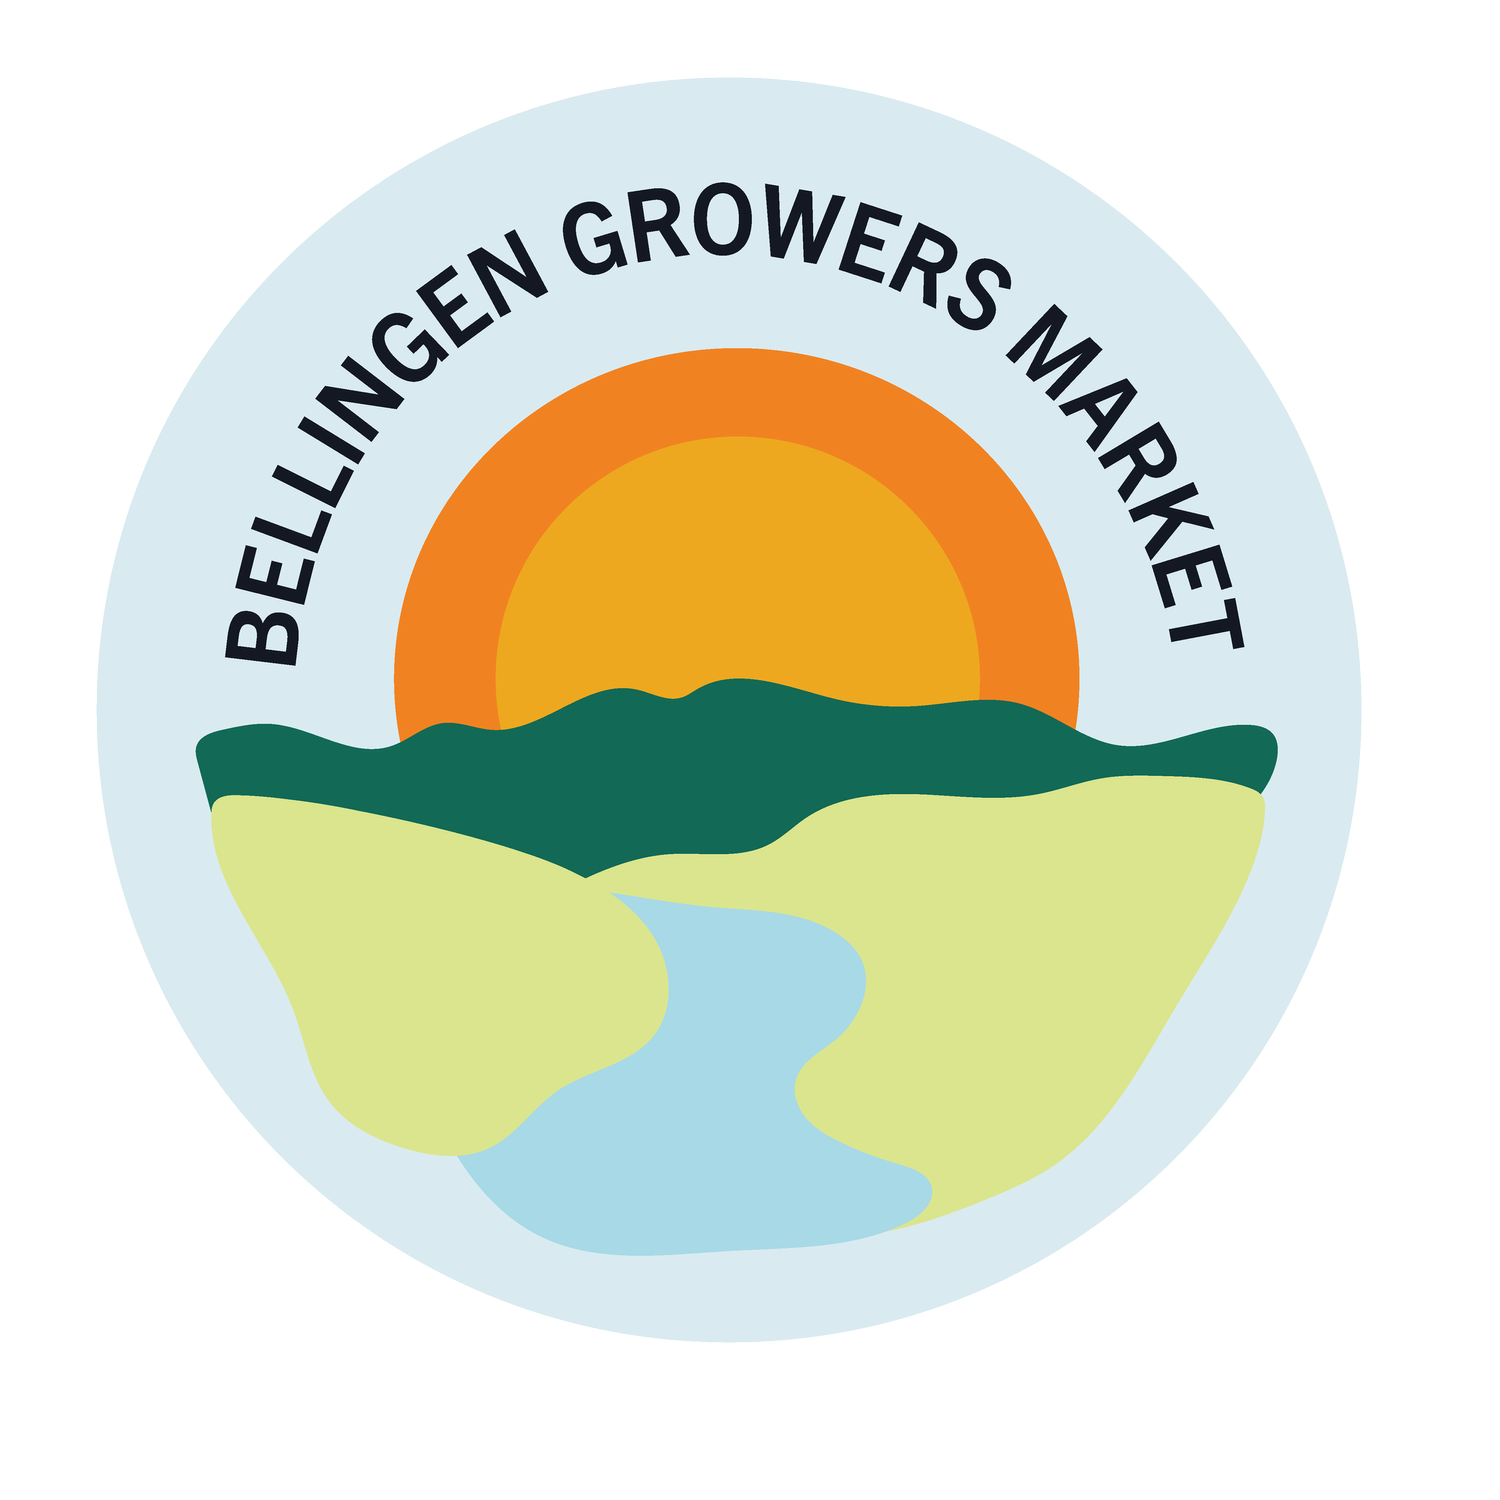 Bellingen Growers Market